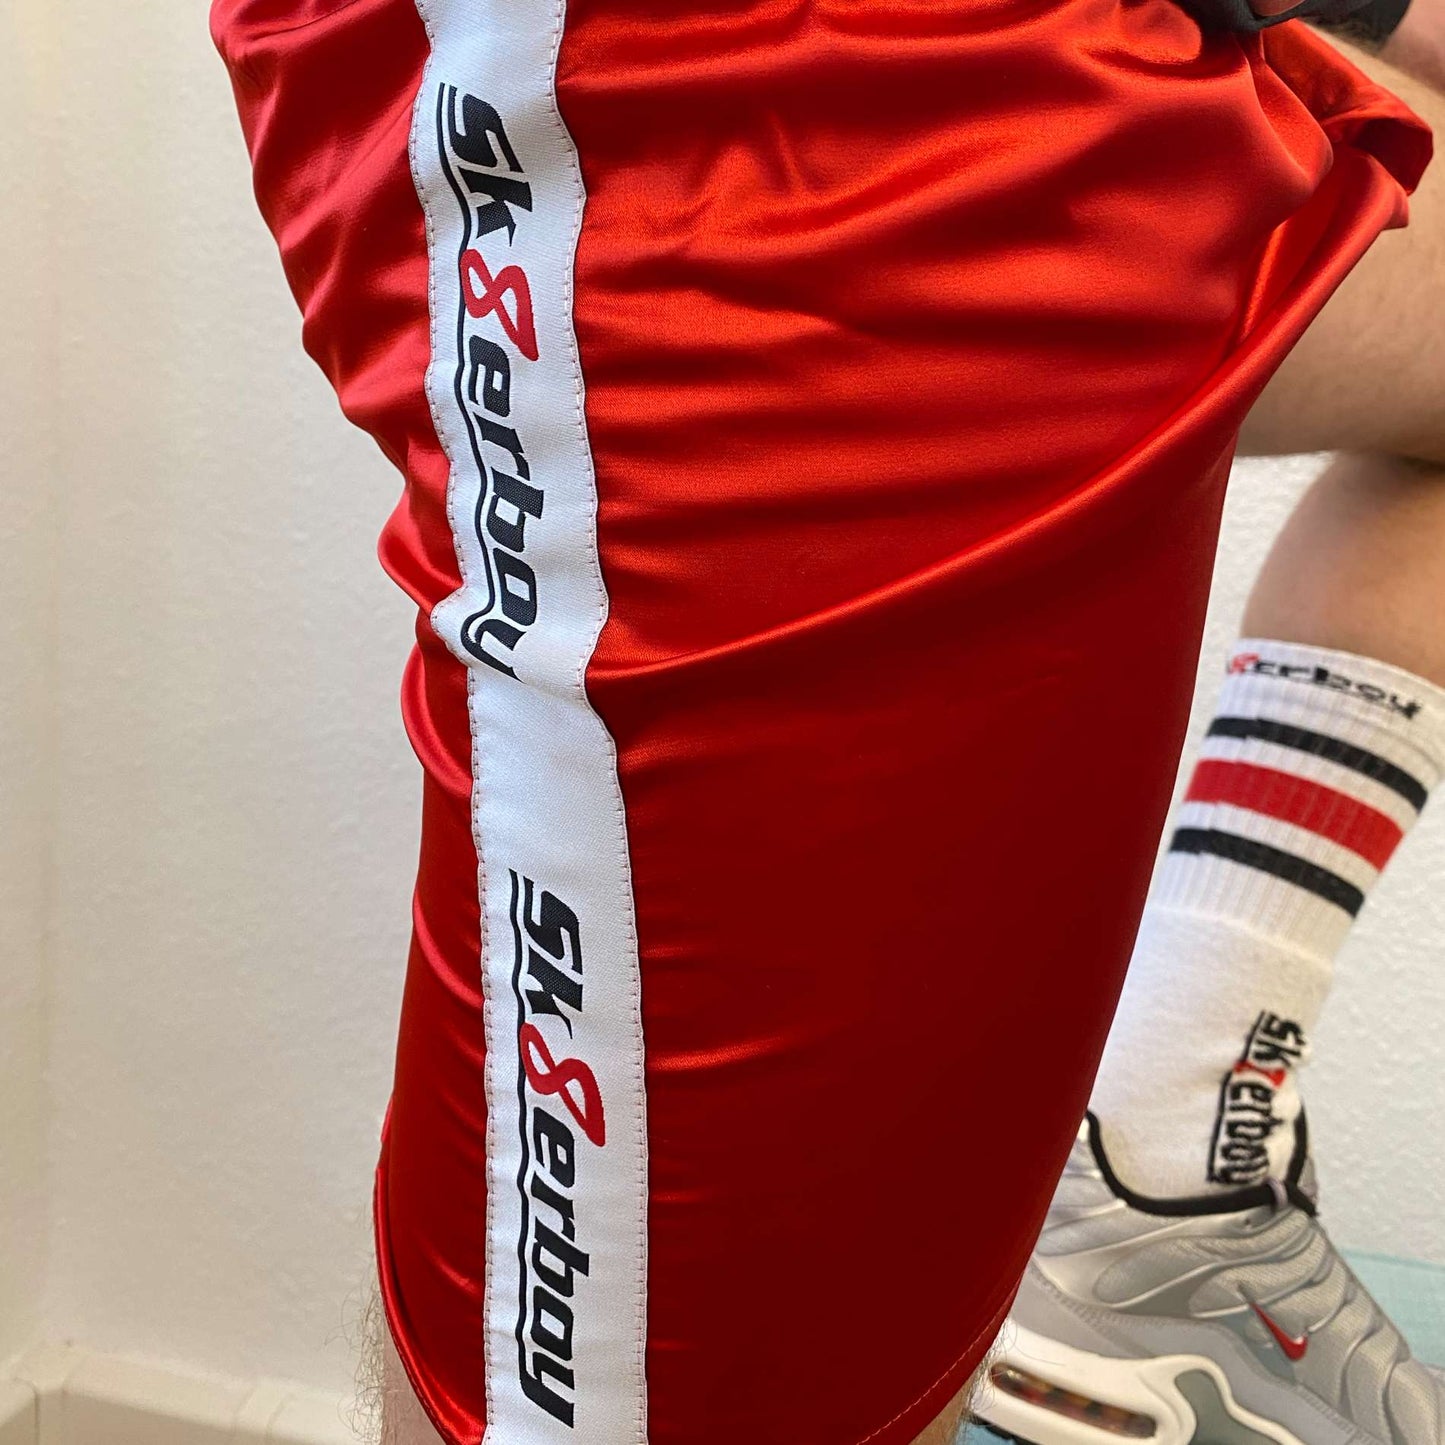 seitliche ansicht einer roten glanz unterhose shiny boxershort von sk8erboy in feuerrot mit logo seitlich und tube socks mit nike tn sneaker in silver